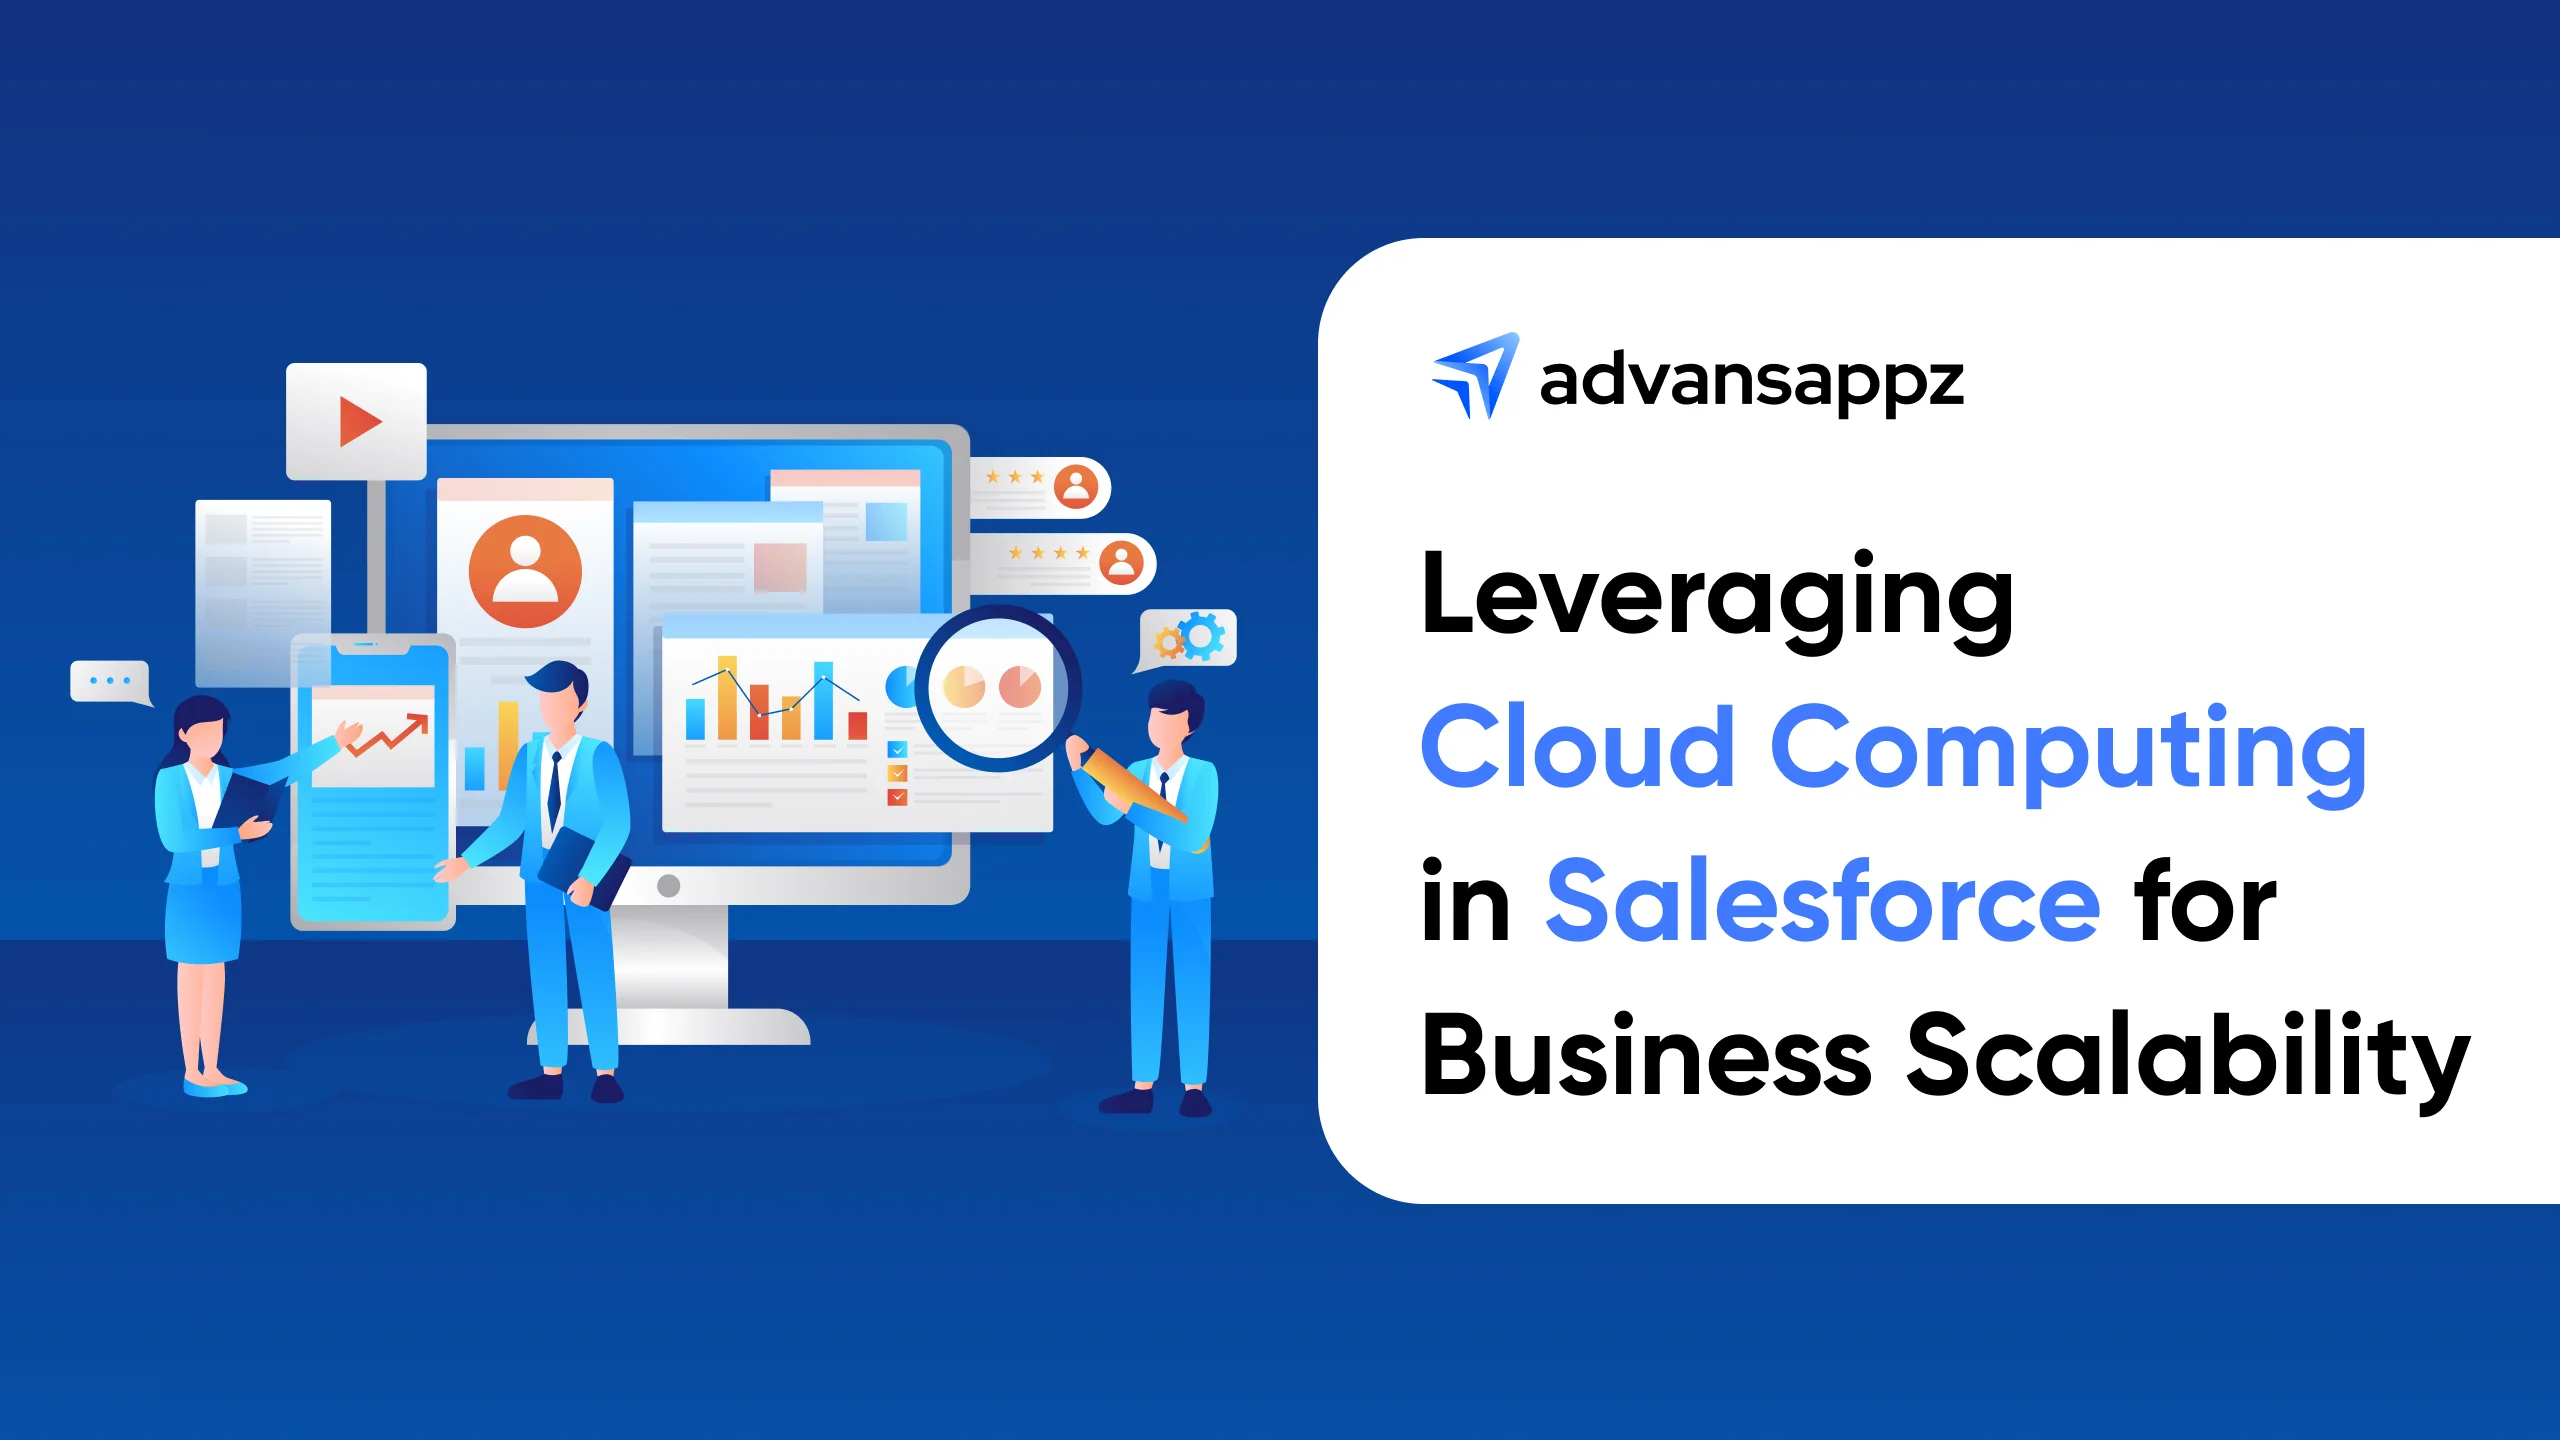 salesforce cloud services